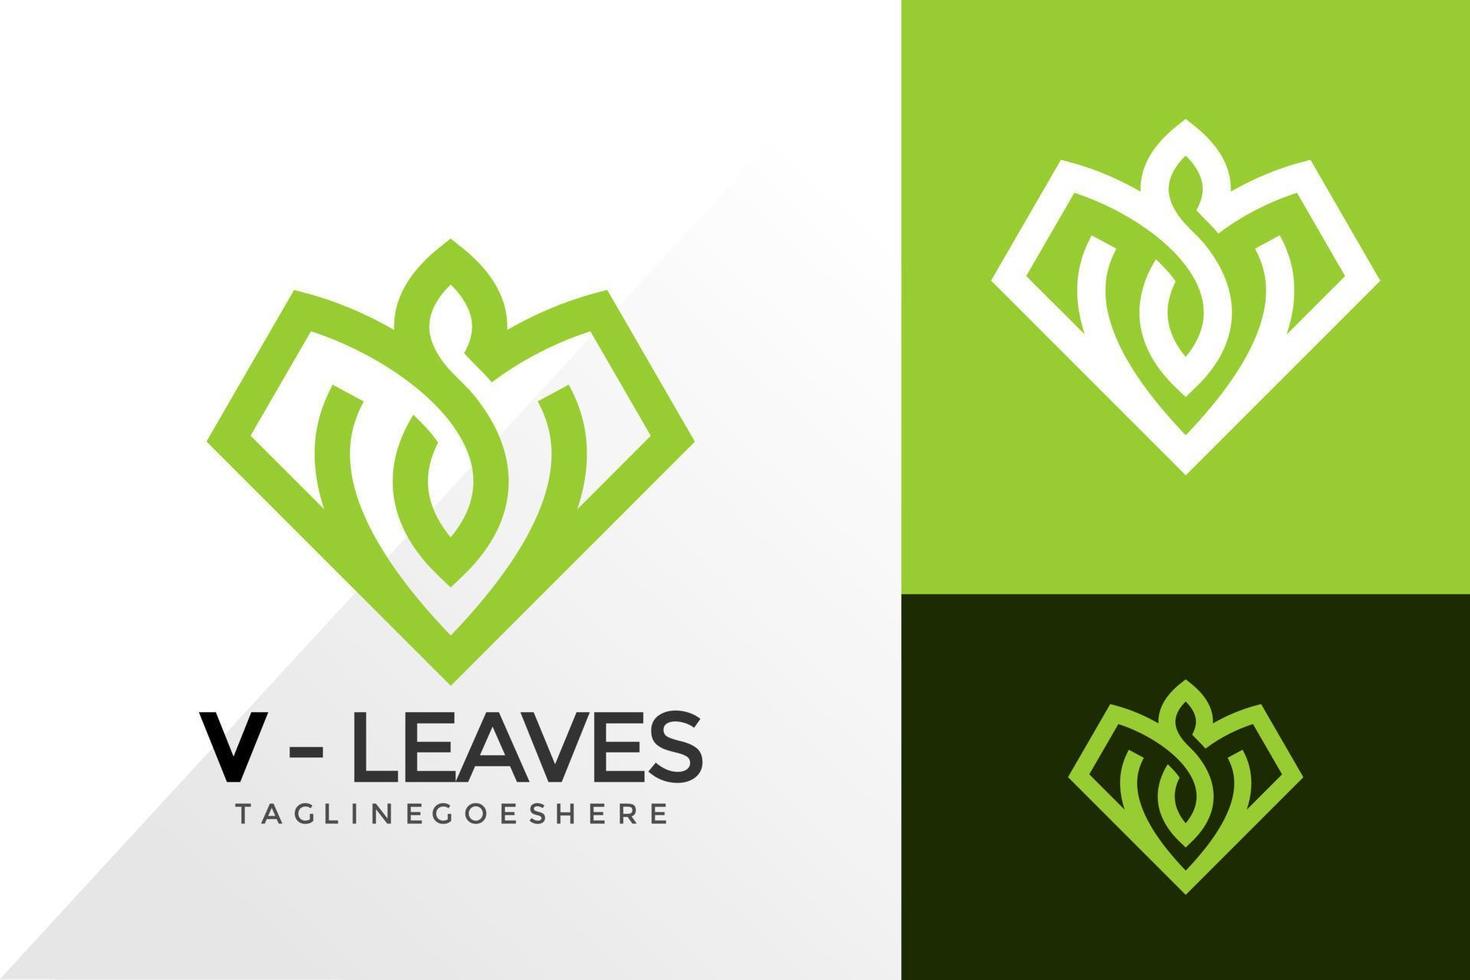 Letter V Leaves Logo Design, Brand Identity Logos Designs Vector Illustration Template